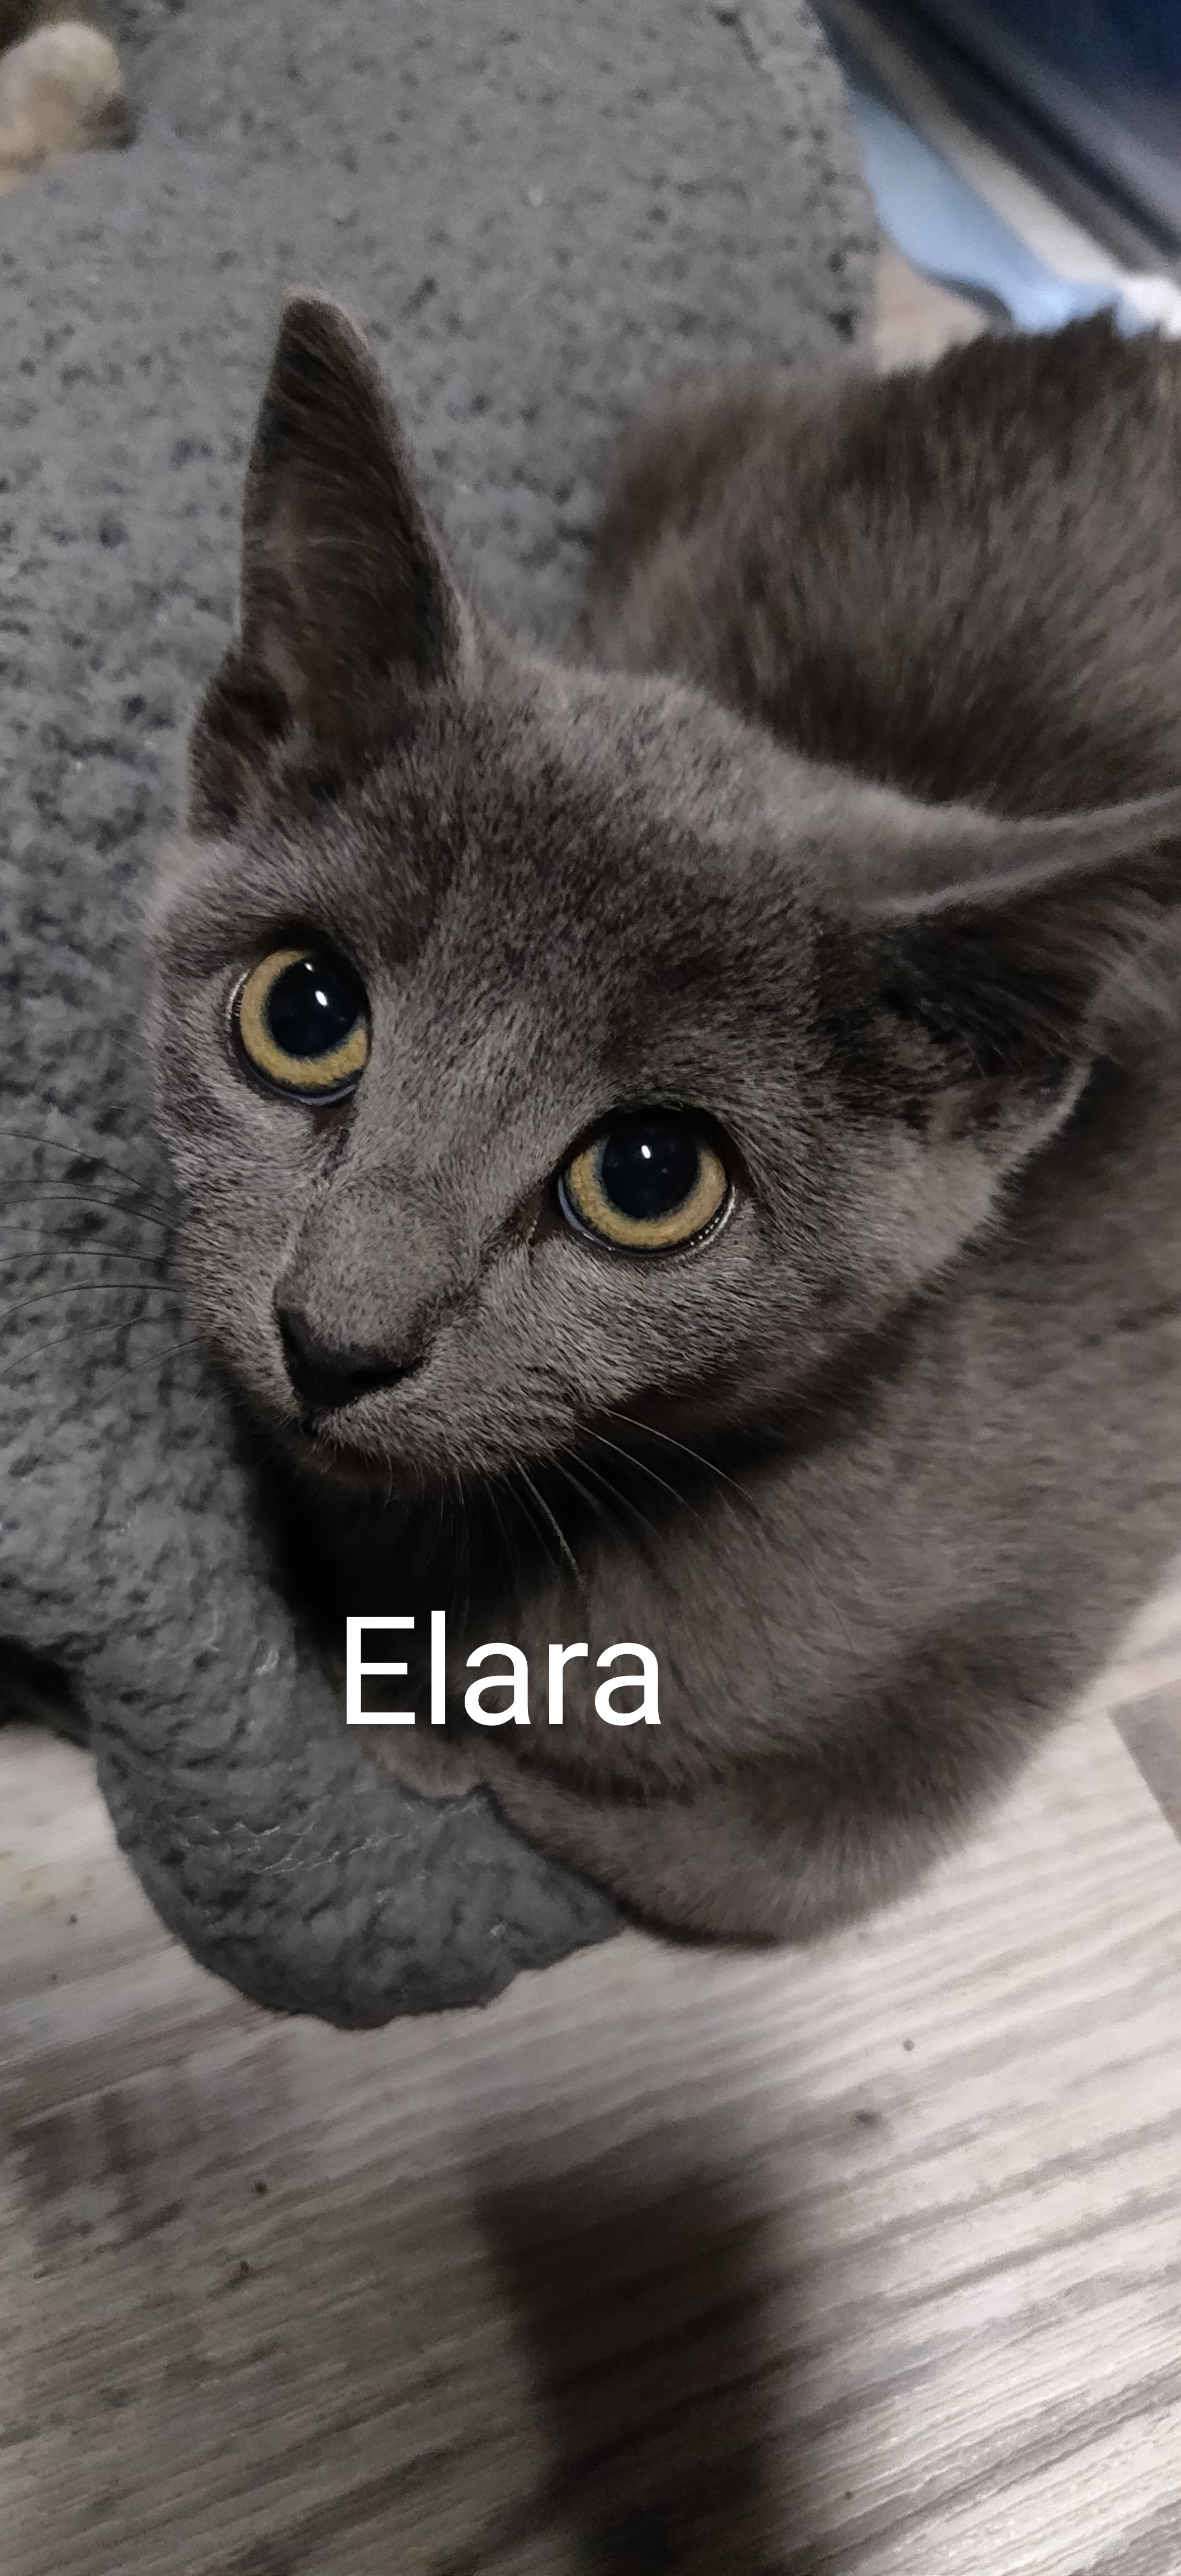 Elara Group Kittens detail page